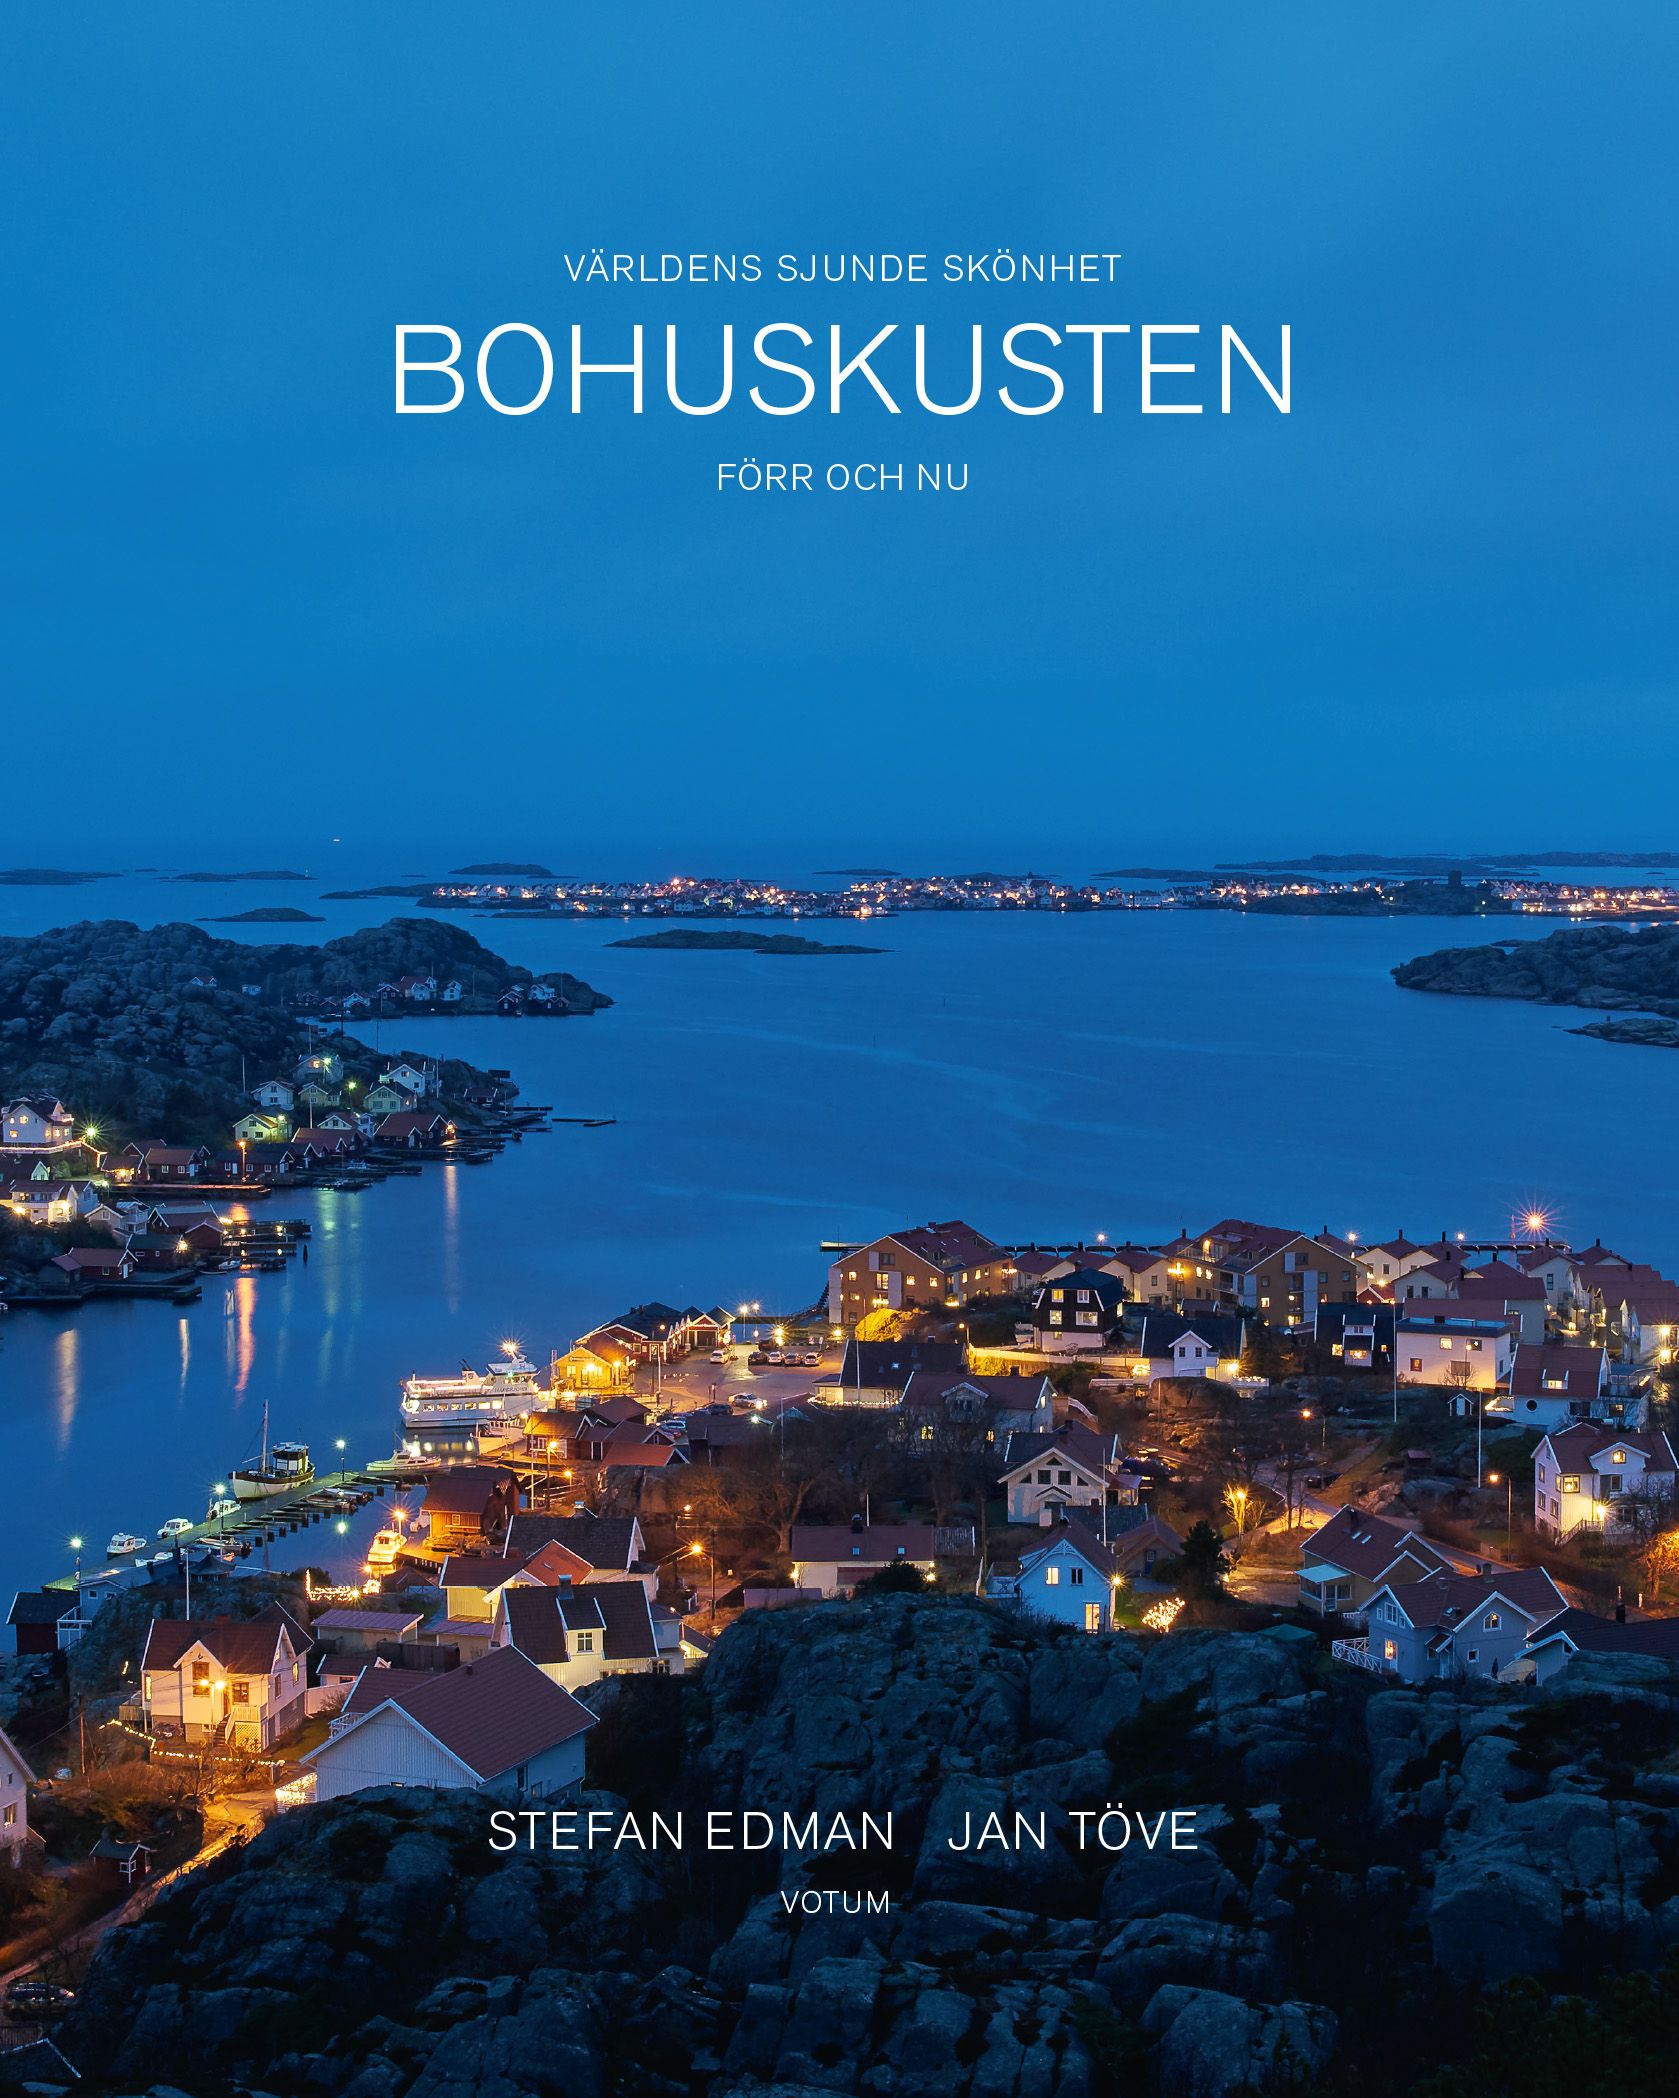 Bohuskusten förr och nu: Världens sjunde skönhet, eBook by Stefan Edman, Jan Töve